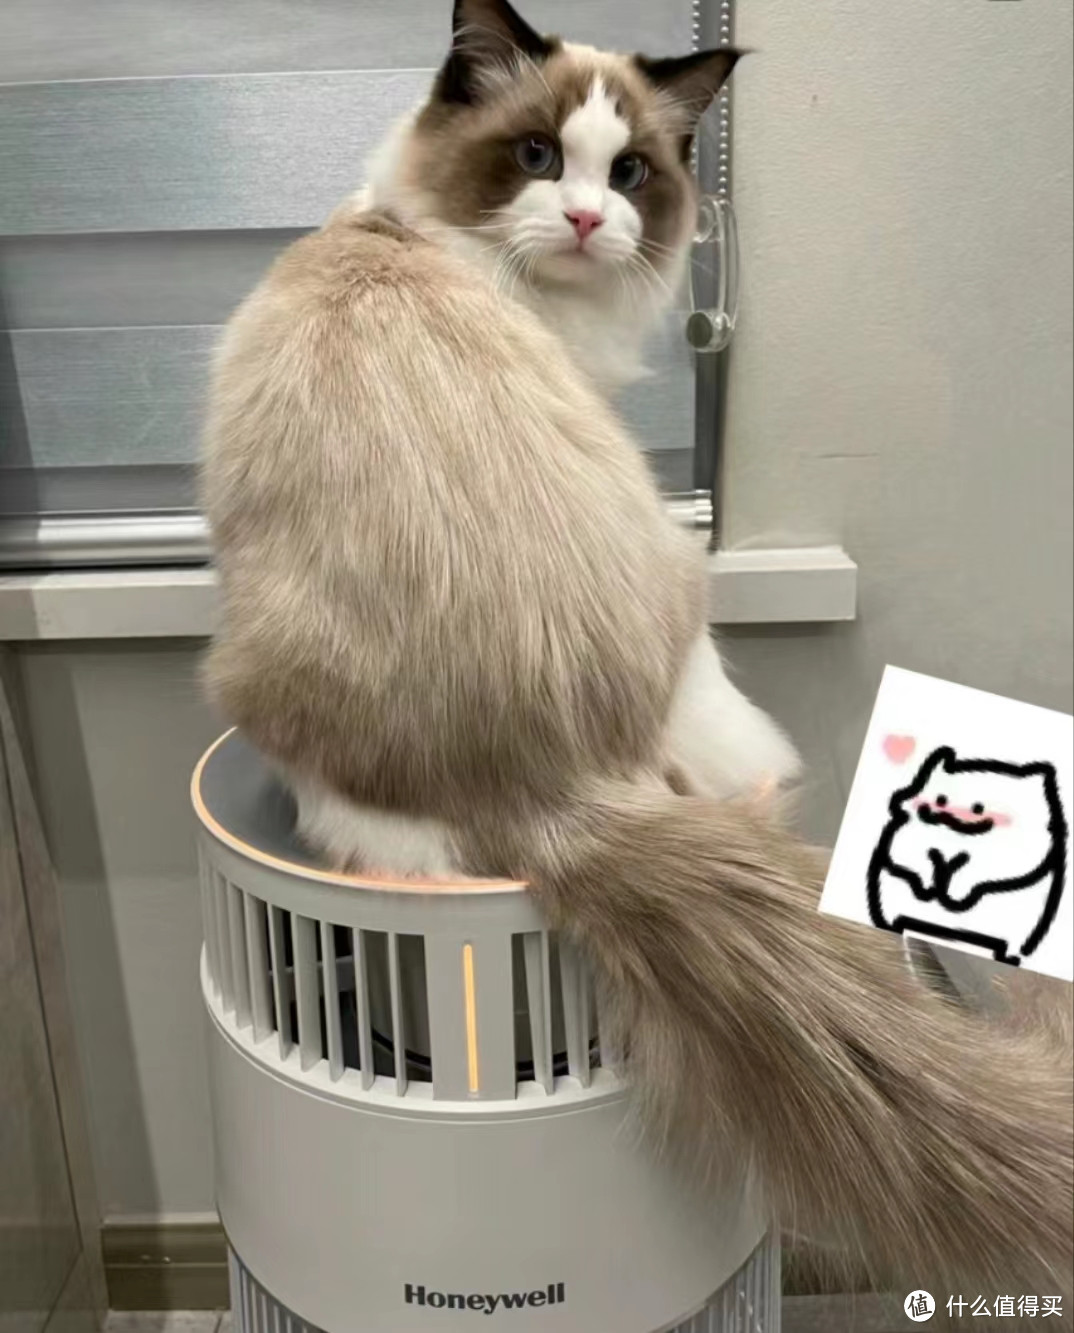 养猫家庭怎么选空气净化器？有没有解决猫毛问题的神器？全方位测评霍尼韦尔H-cat猫用净化器